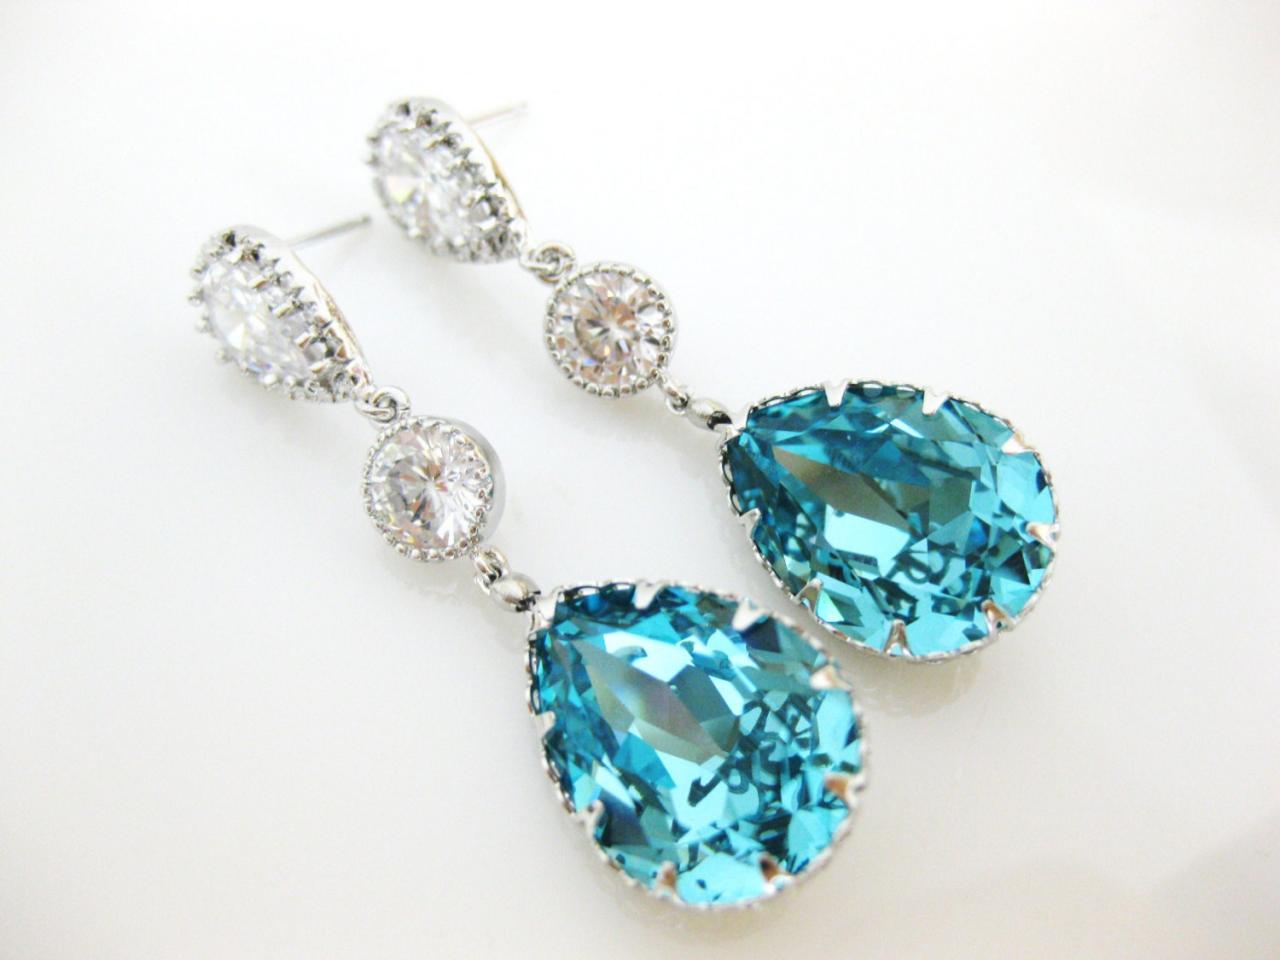 Teal Blue Teardrop Earrings Bridal Crystal Earrings Wedding Jewelry Swarovski Light Turquoise Crystal Cubic Zirconia Earrings (E164)